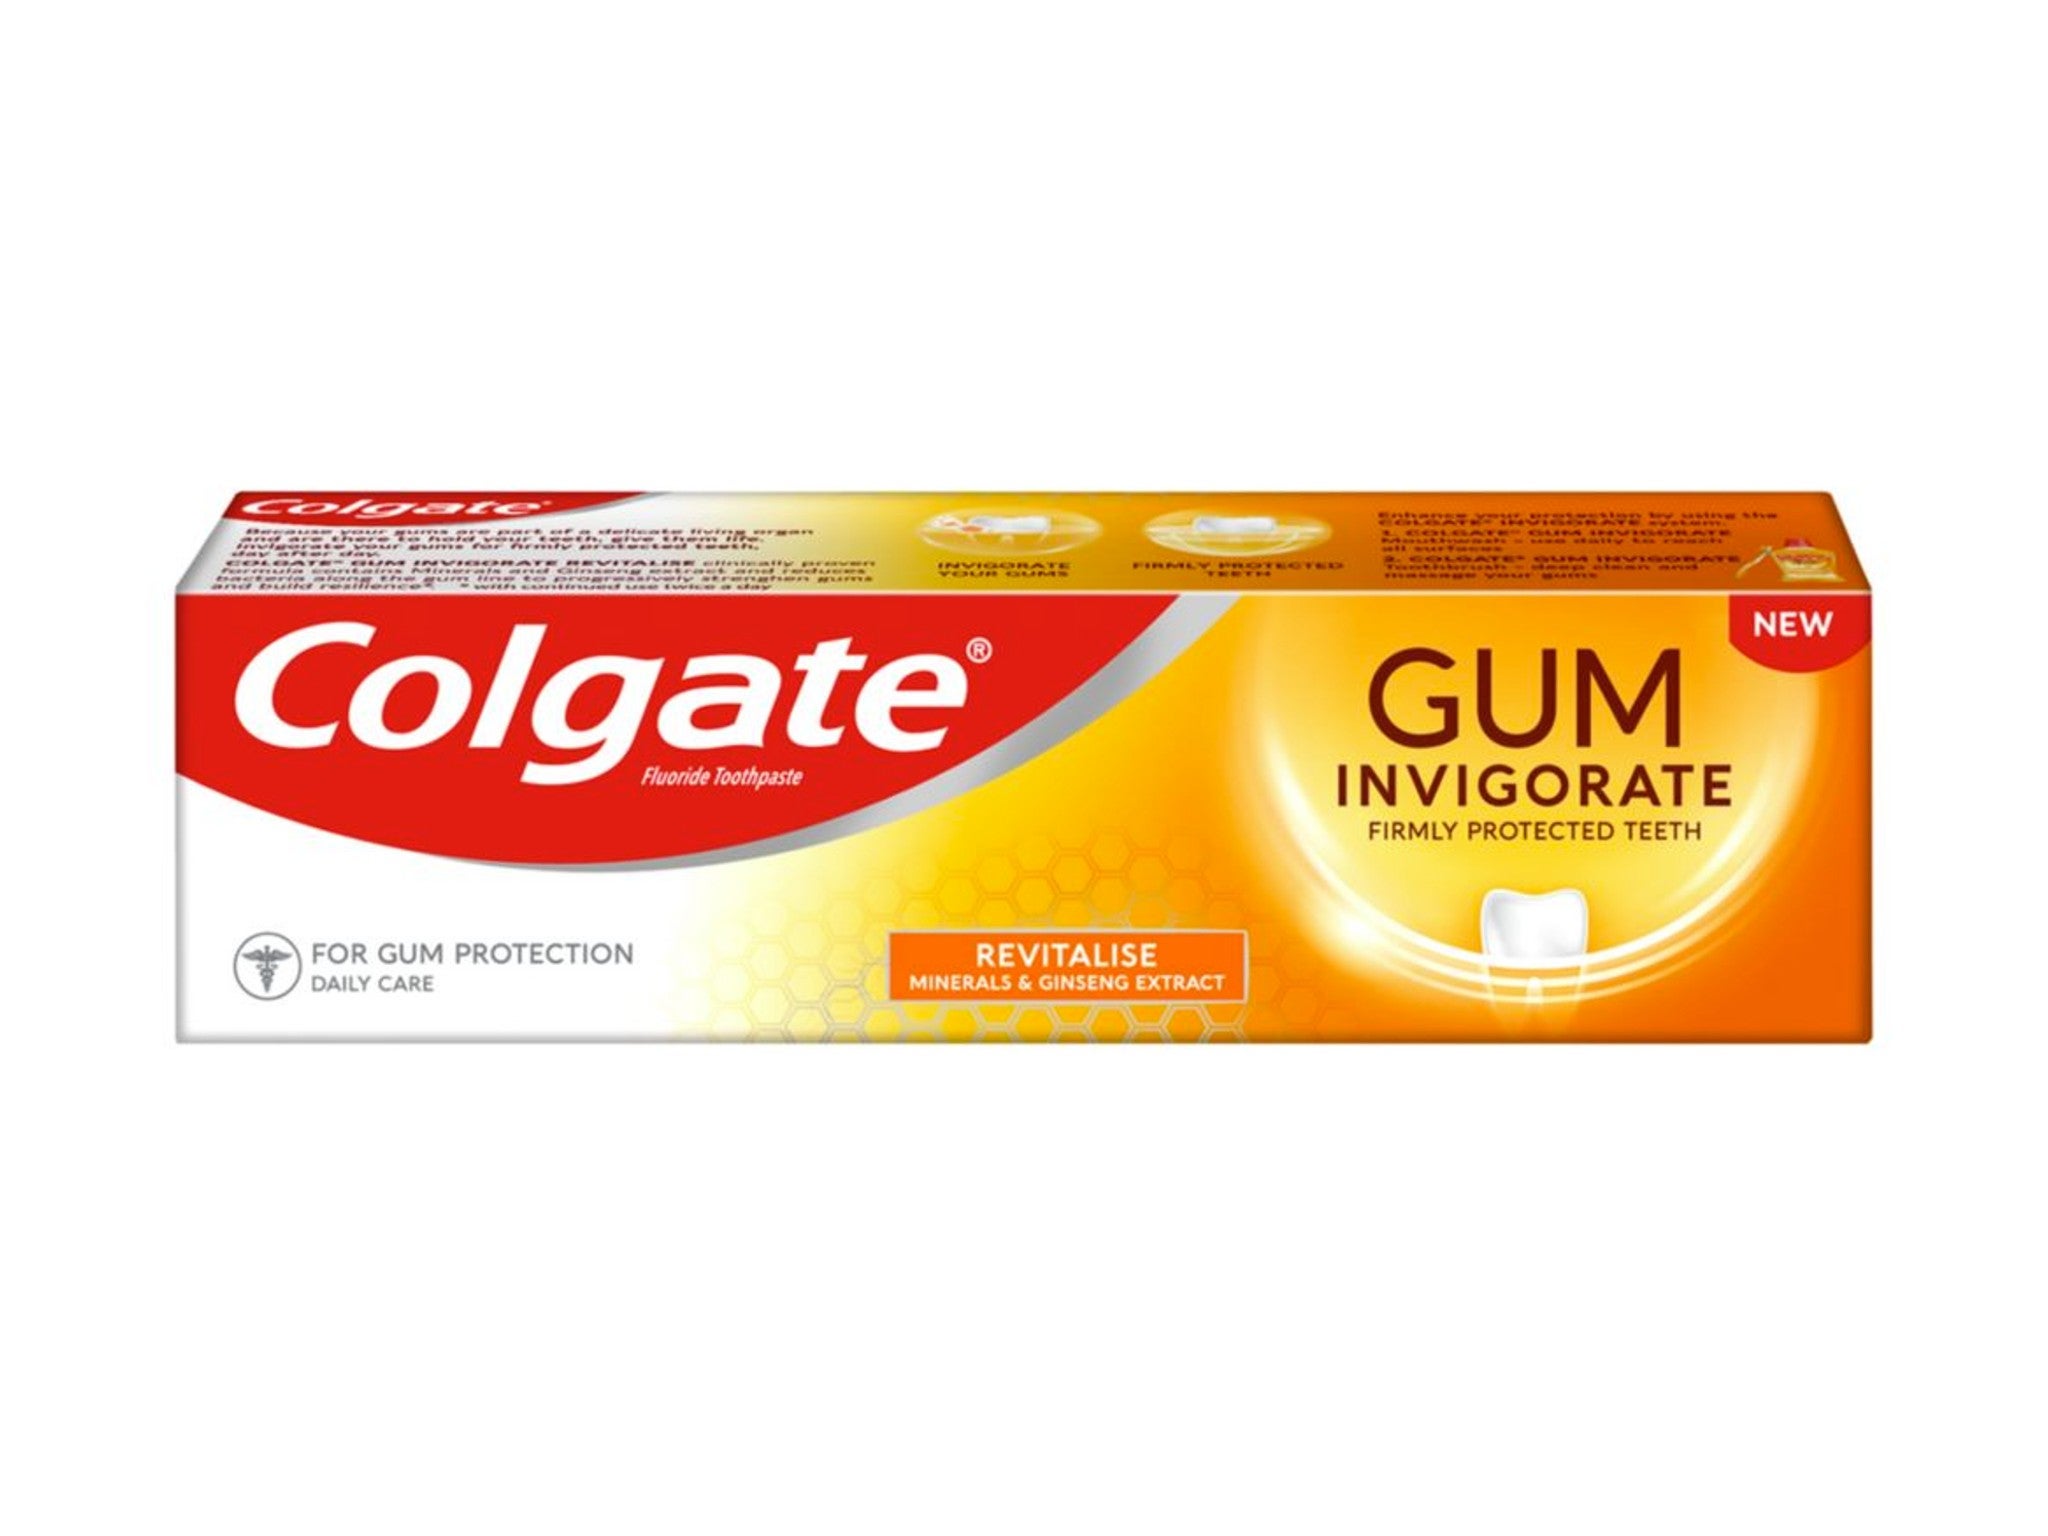 Colgate gum invigorate revitalise toothpaste indybest.jpg